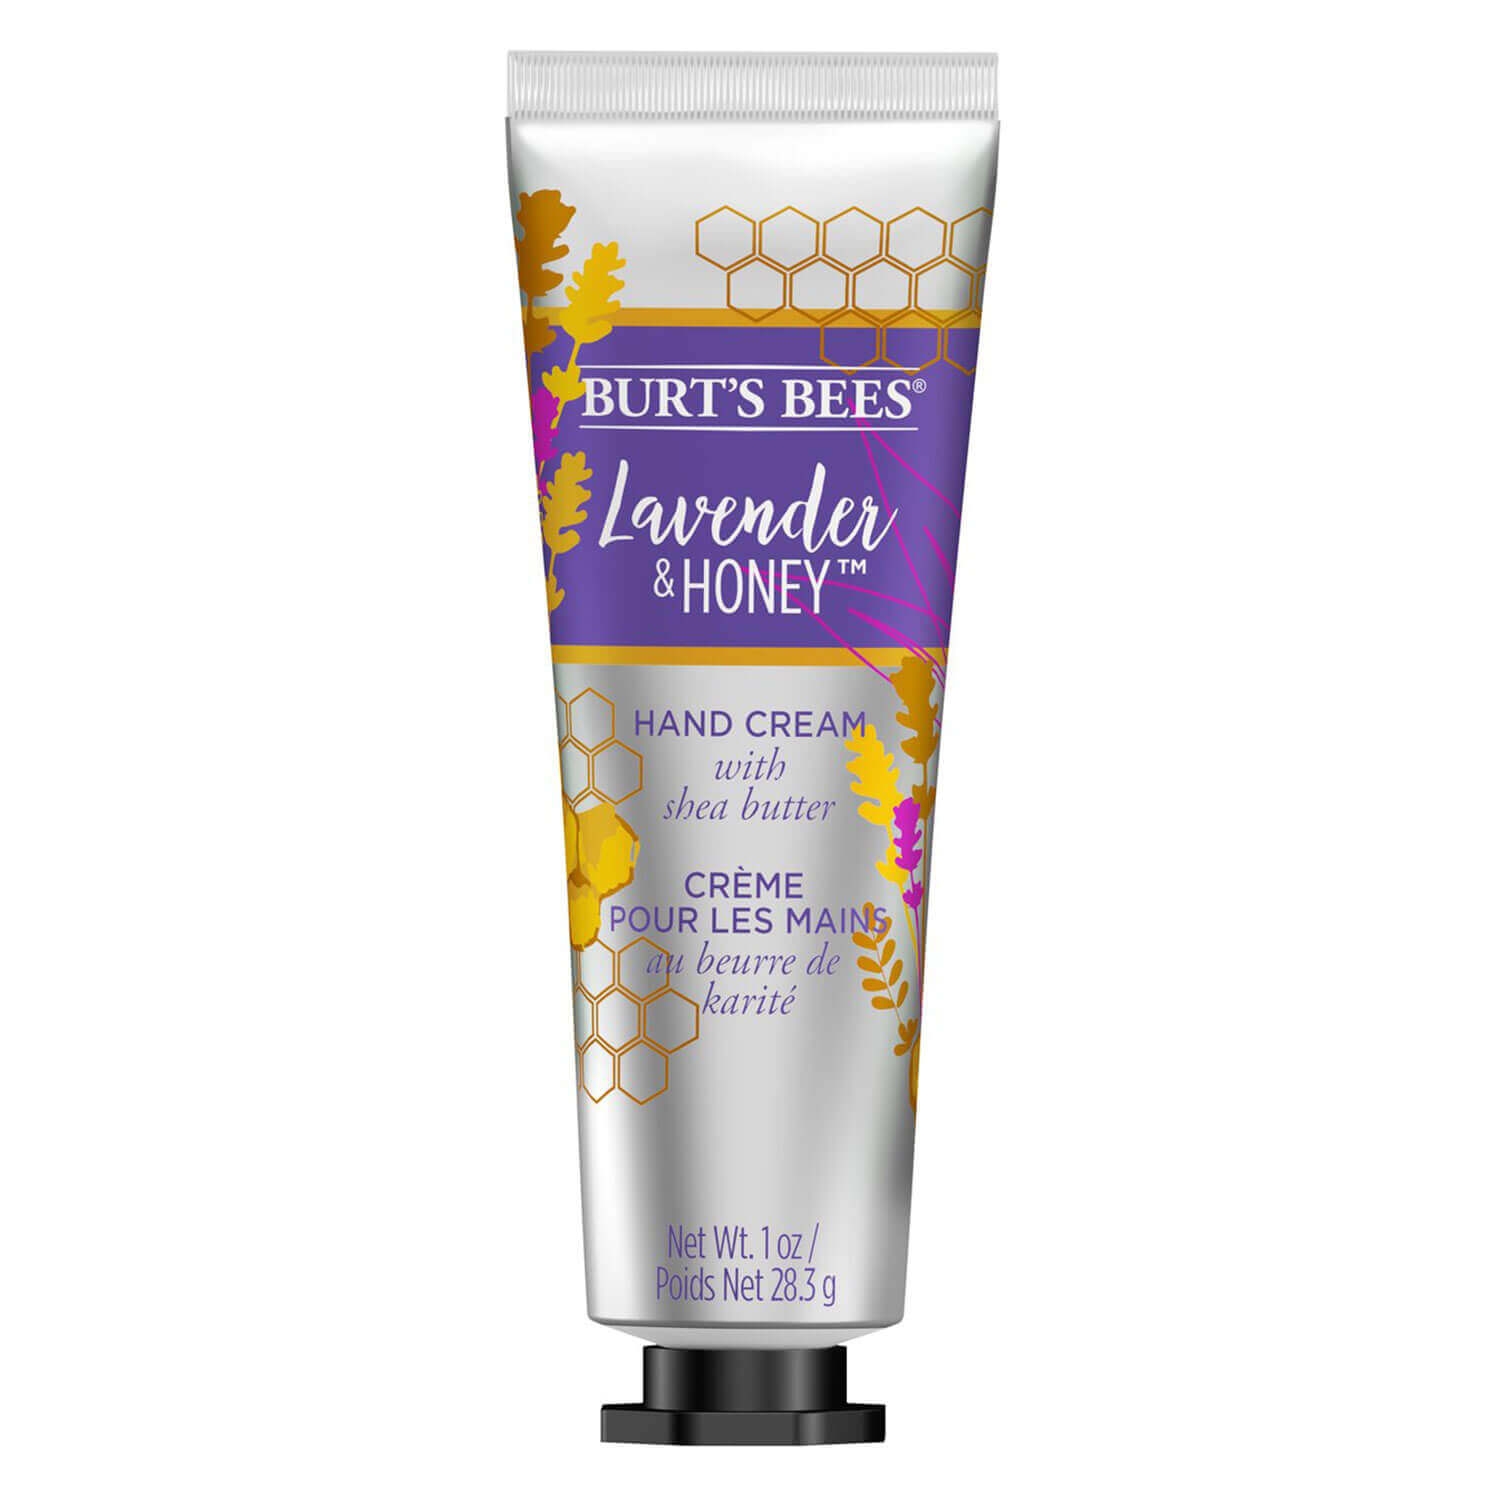 Produktbild von Burt's Bees - Hand Cream Lavender & Honey